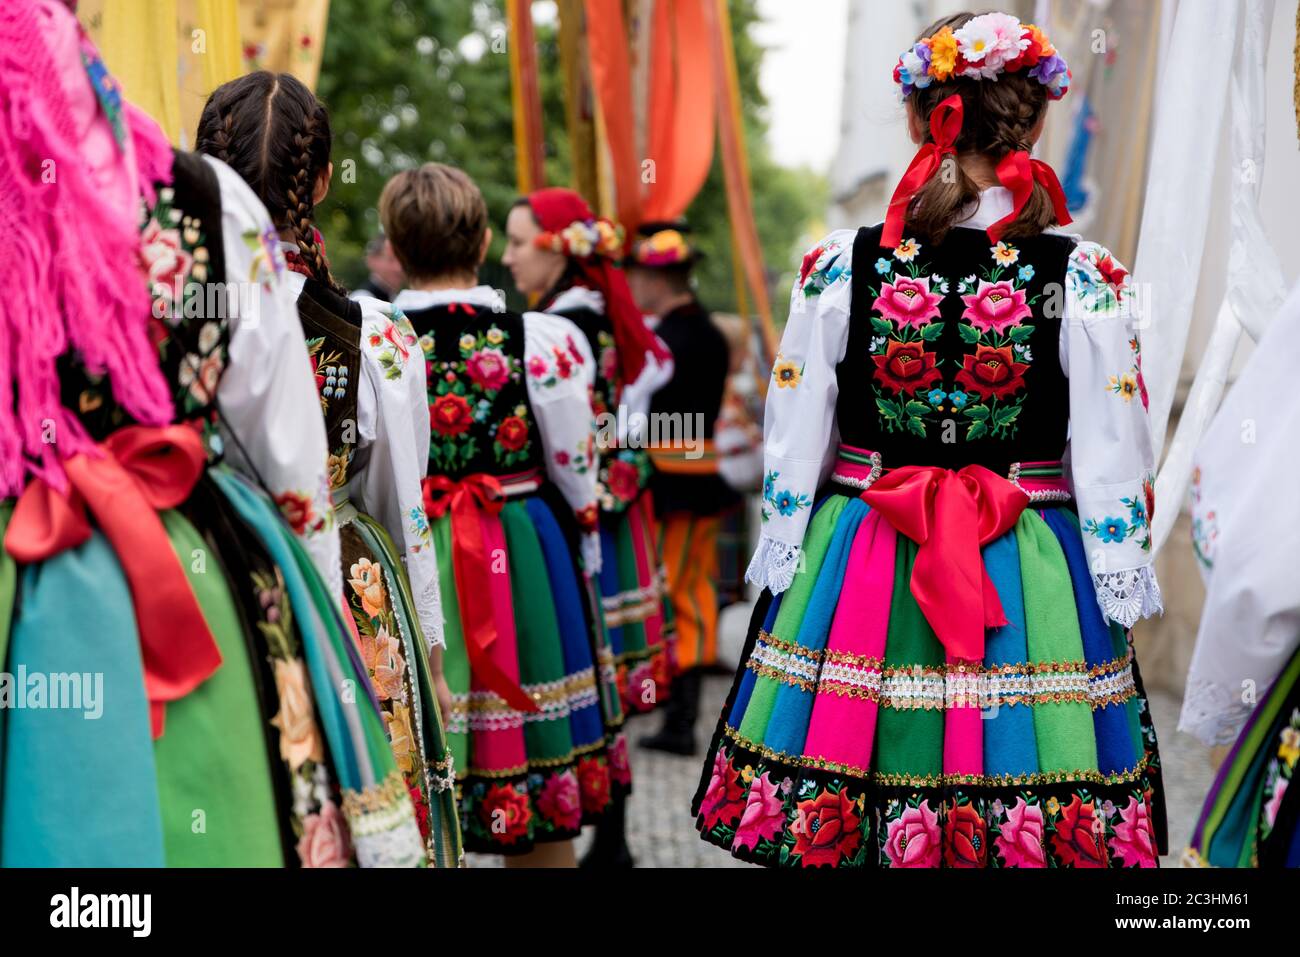 Mädchen in polnischen nationalen Volkstrachten aus der Region Lowicz während der Fronleichnamsprozession gekleidet. Traditionelle bunt gestreifte Lowicz Röcke Stockfoto